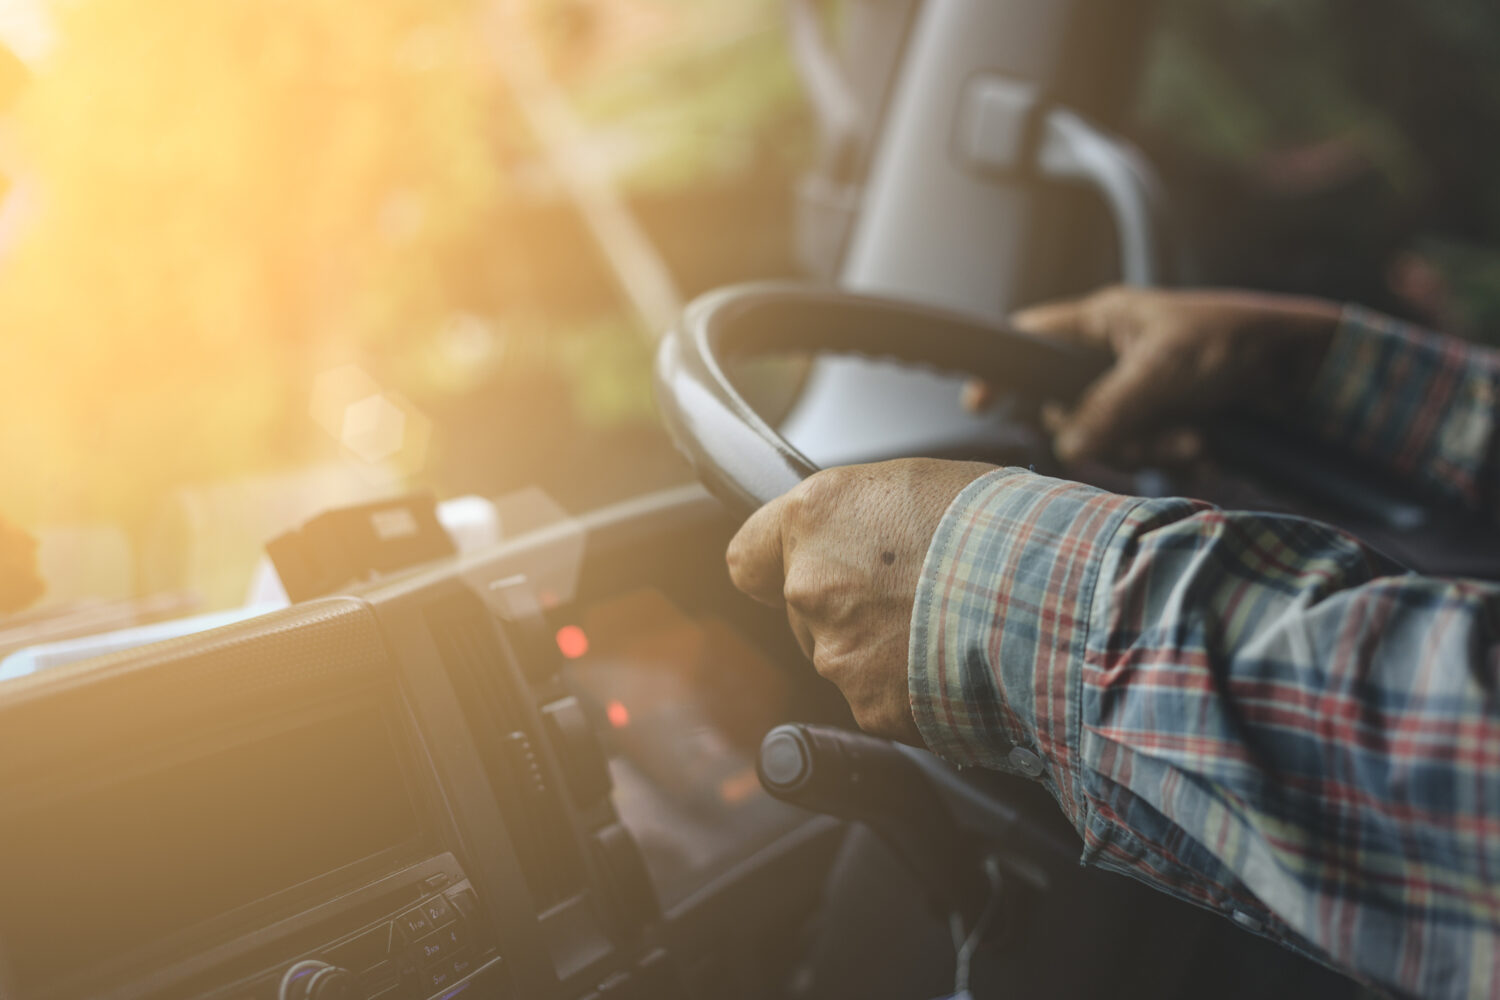 Șofer pe camion în UK – de ce sunt atât de multe joburi libere? Reacția Marii Britanii la criză